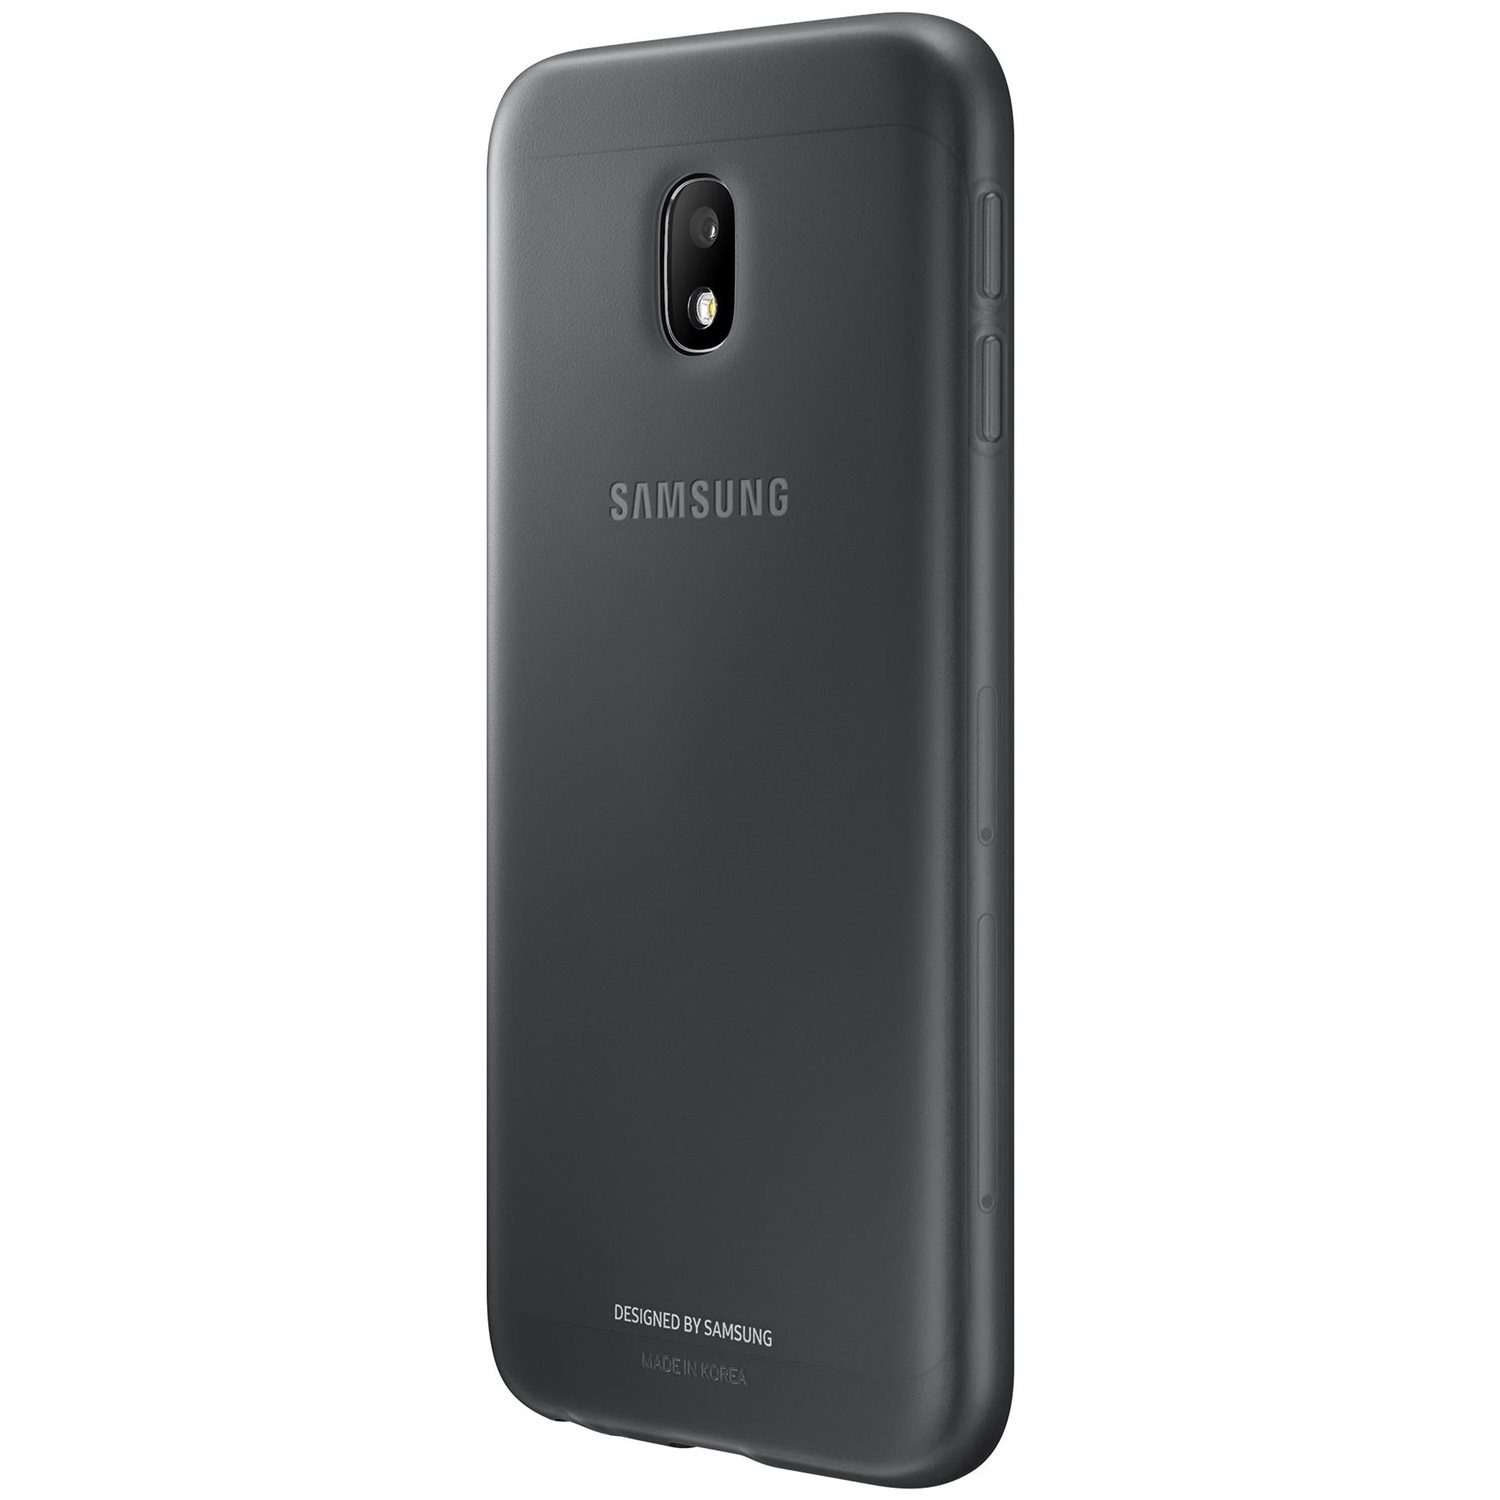 Samsung Galaxy J3 17 Black